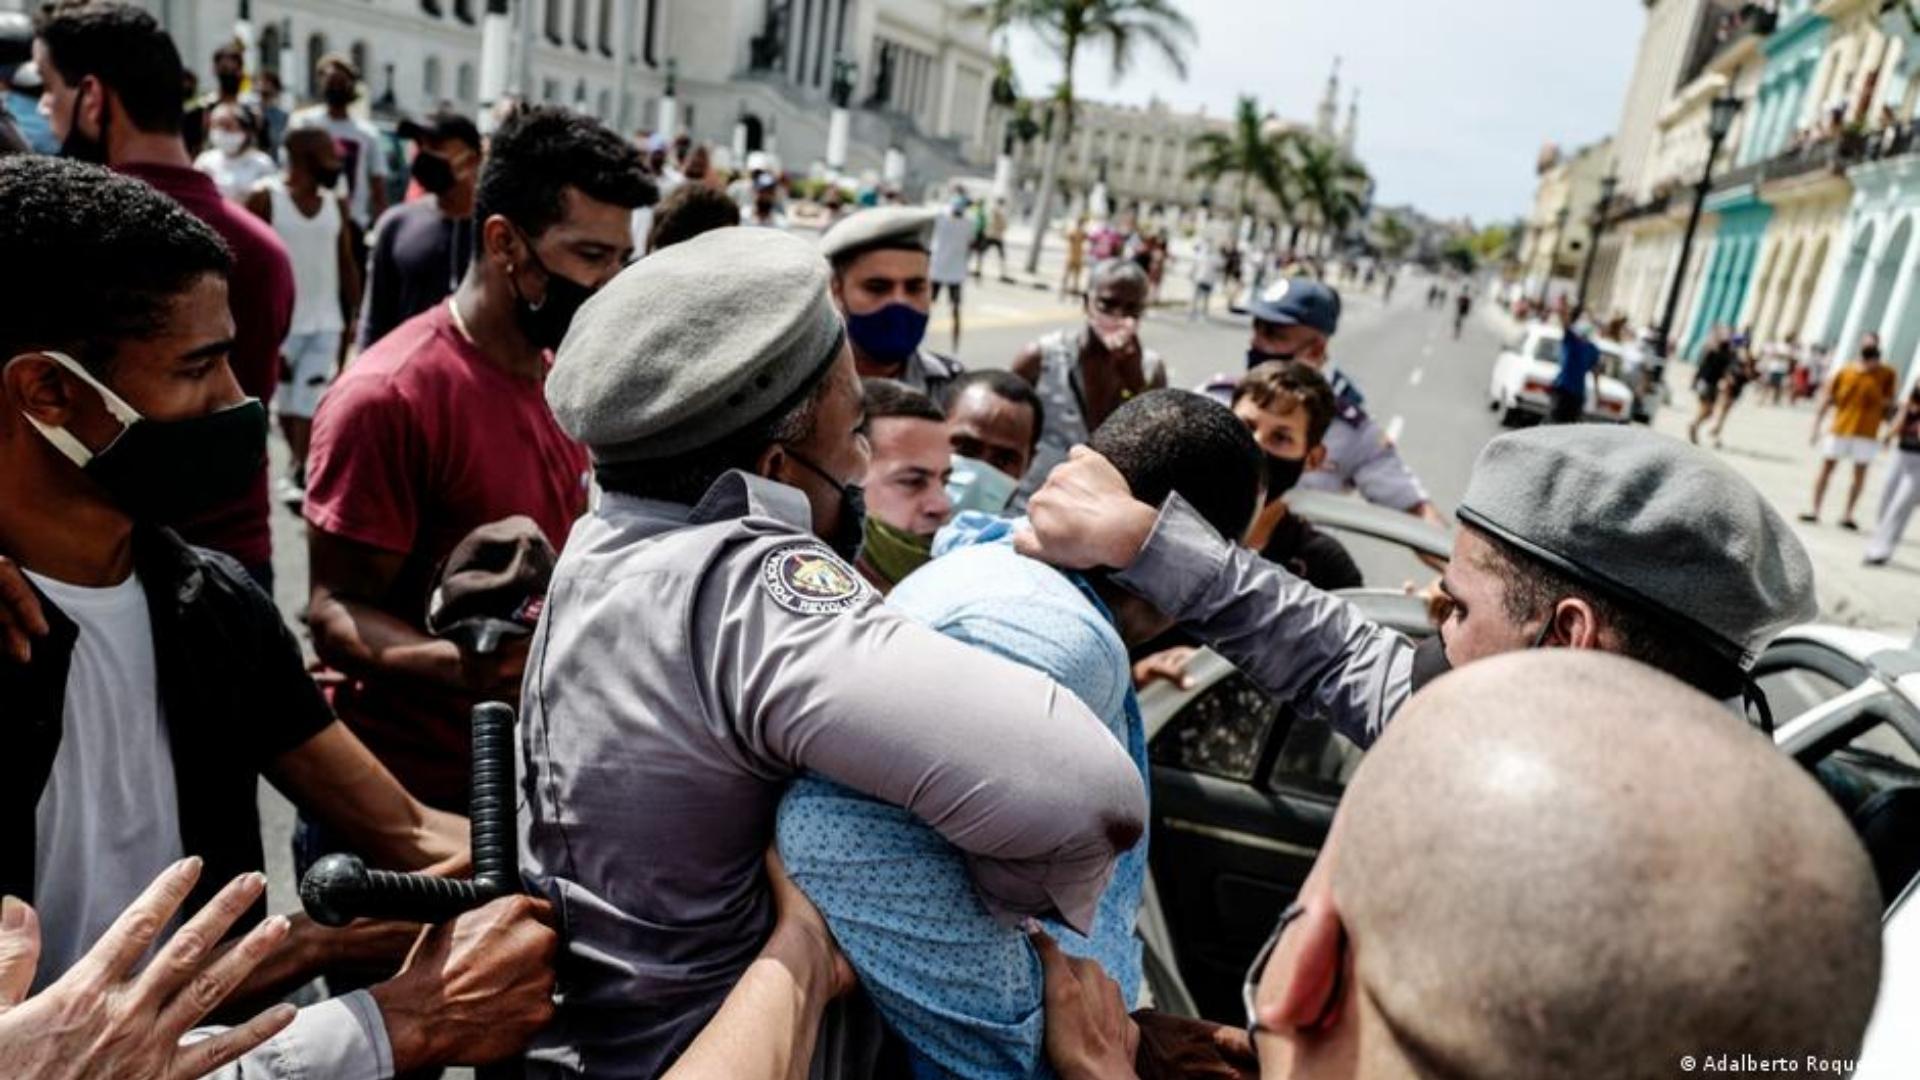 Represión en Cuba (Adalberto Roque/AFP)